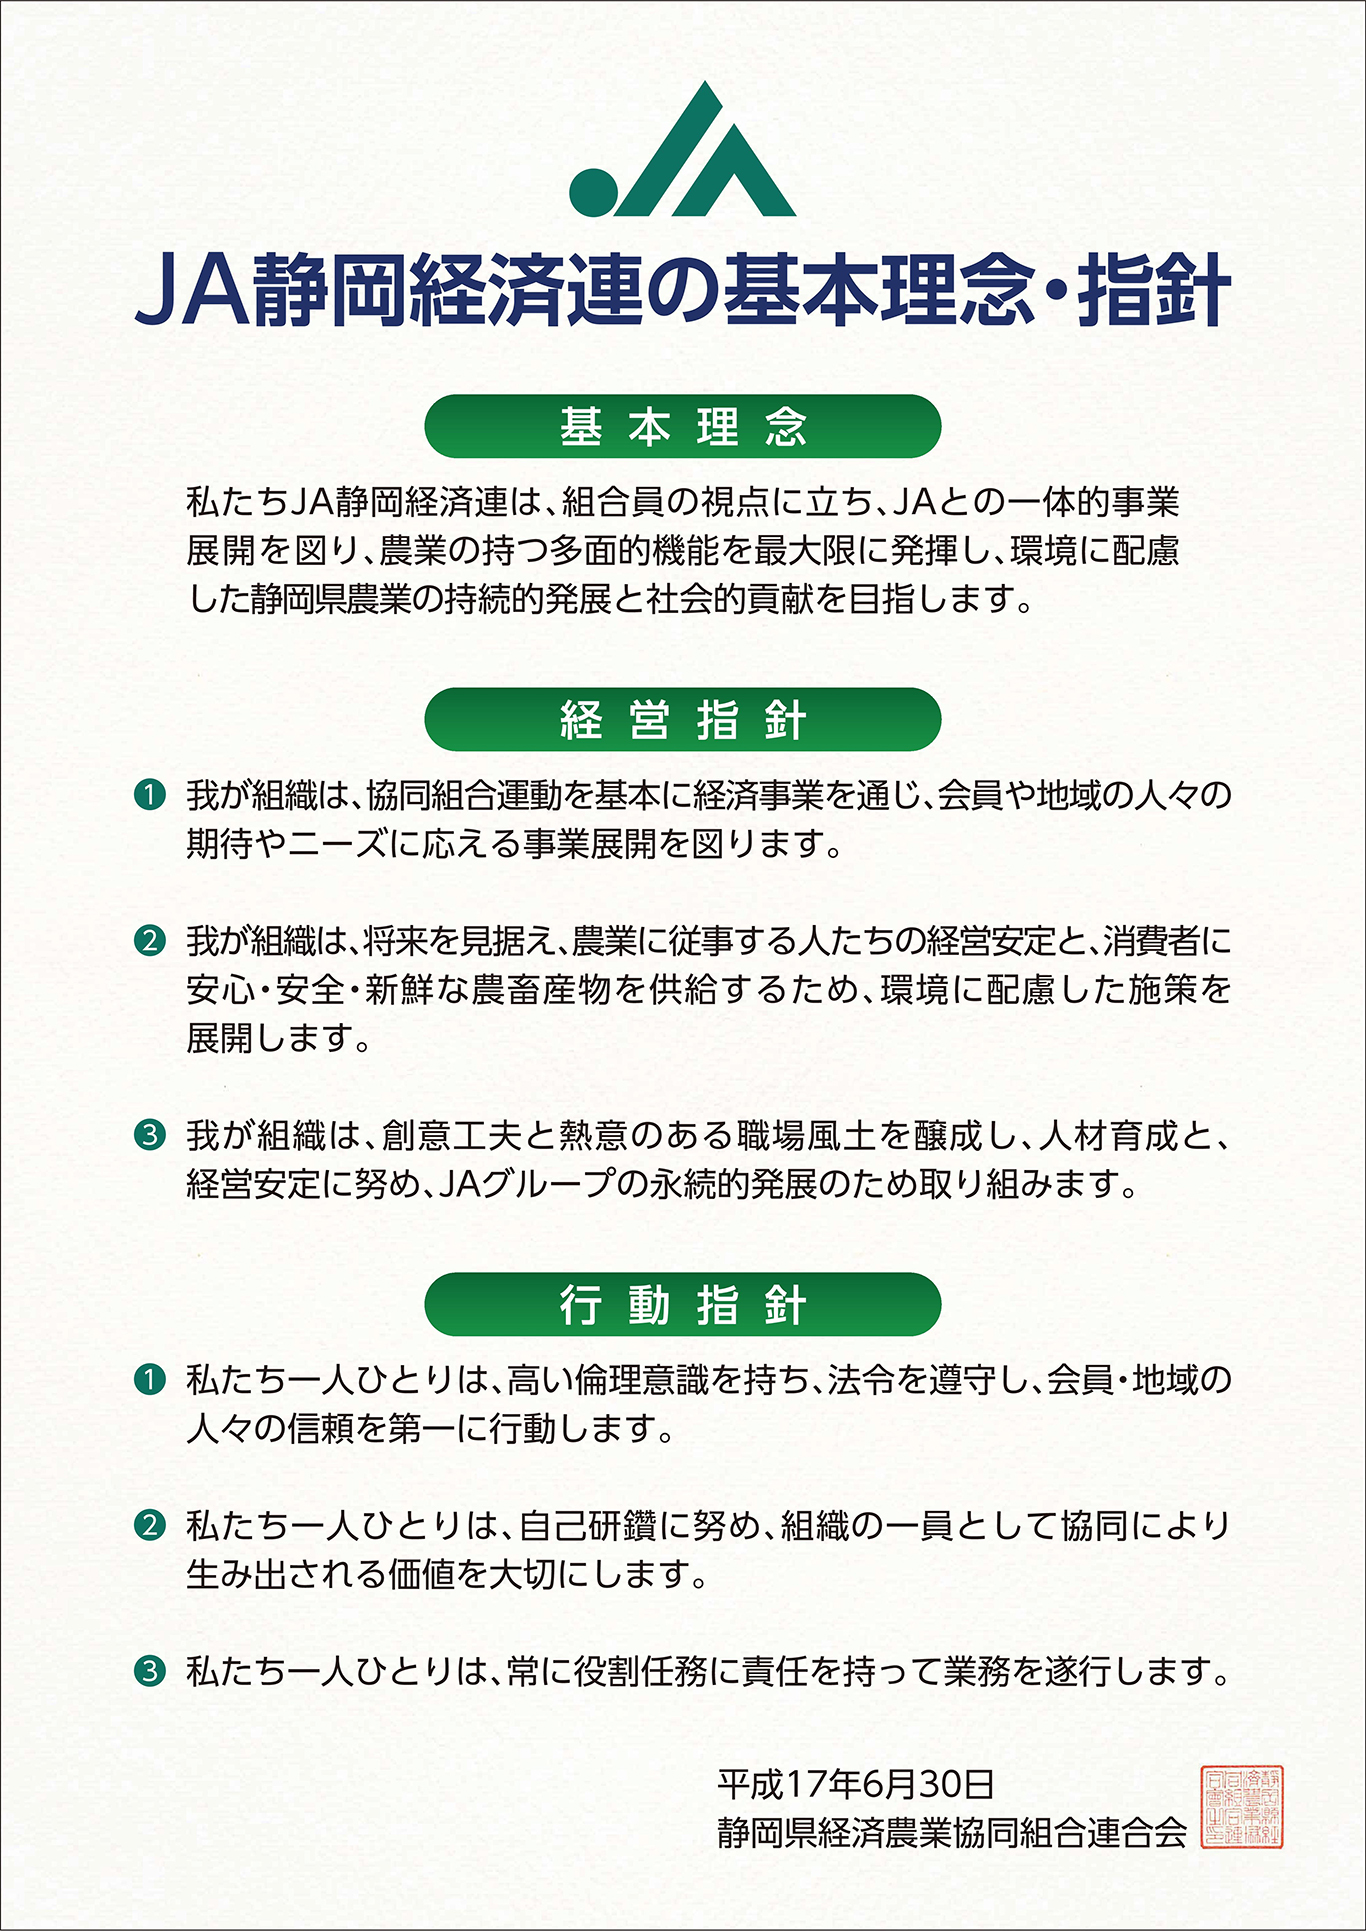 JA静岡経済連の基本理念・指針